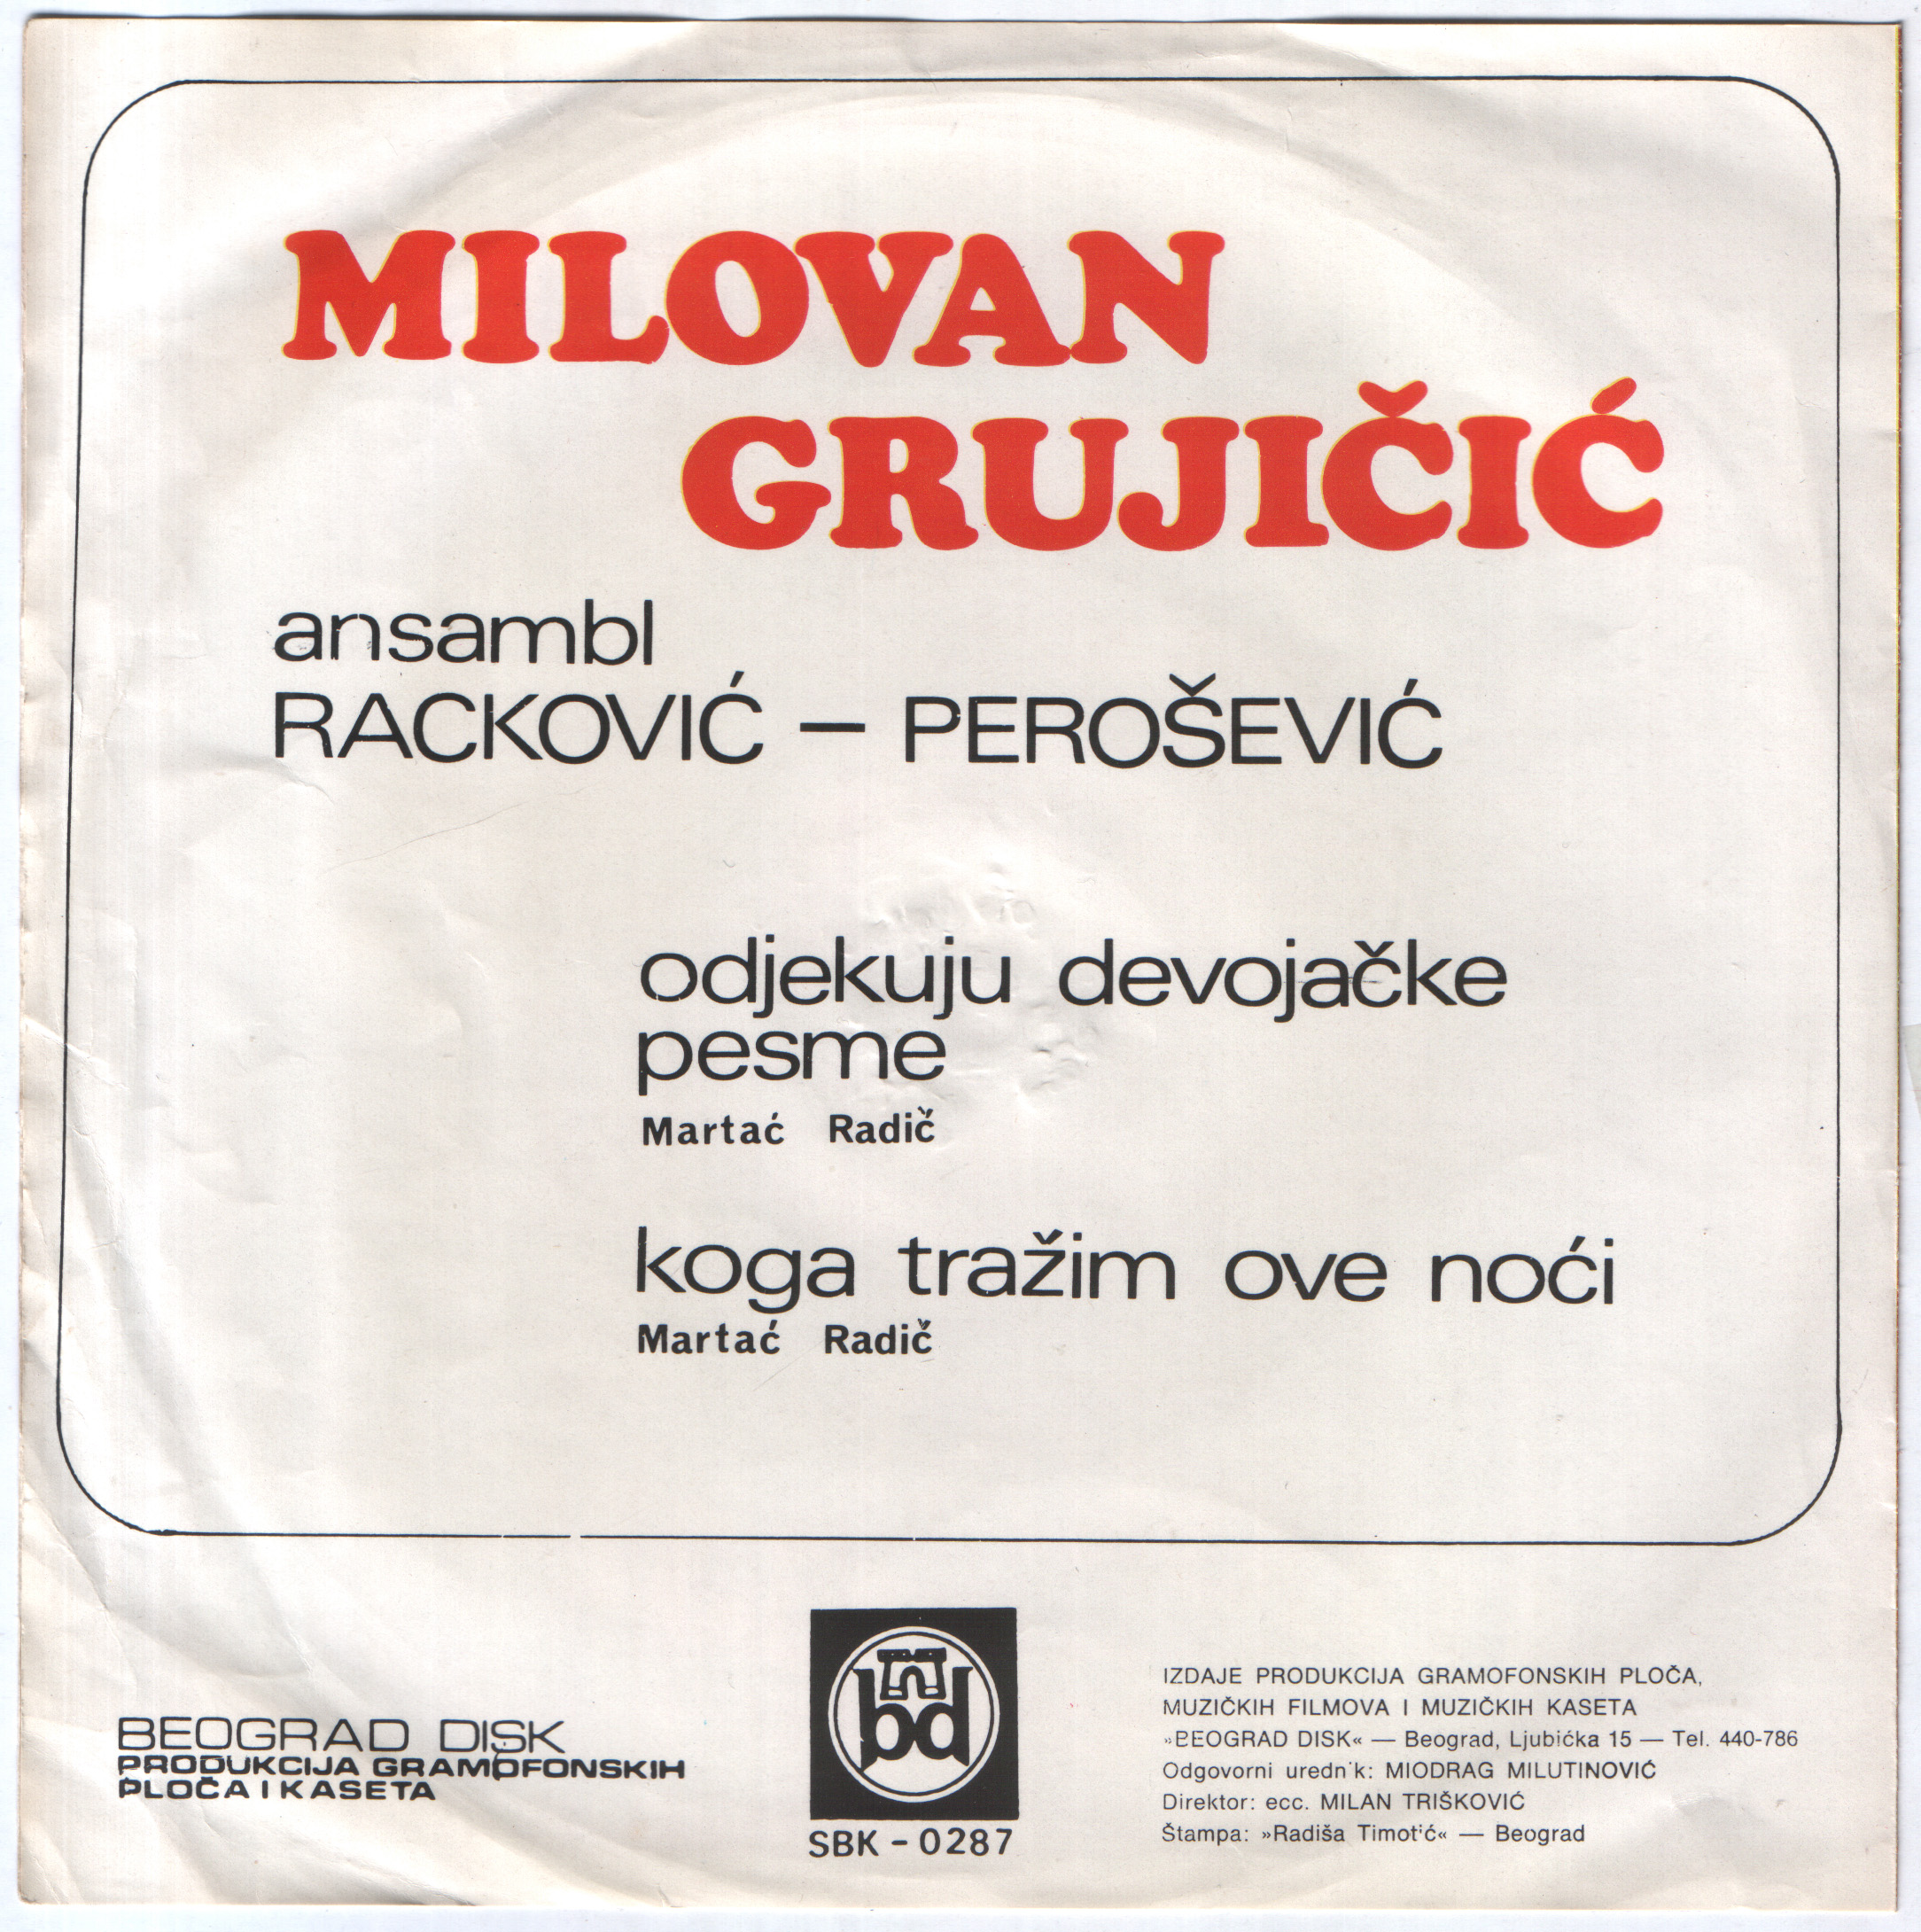 Milovan Grujicic 1976 Z